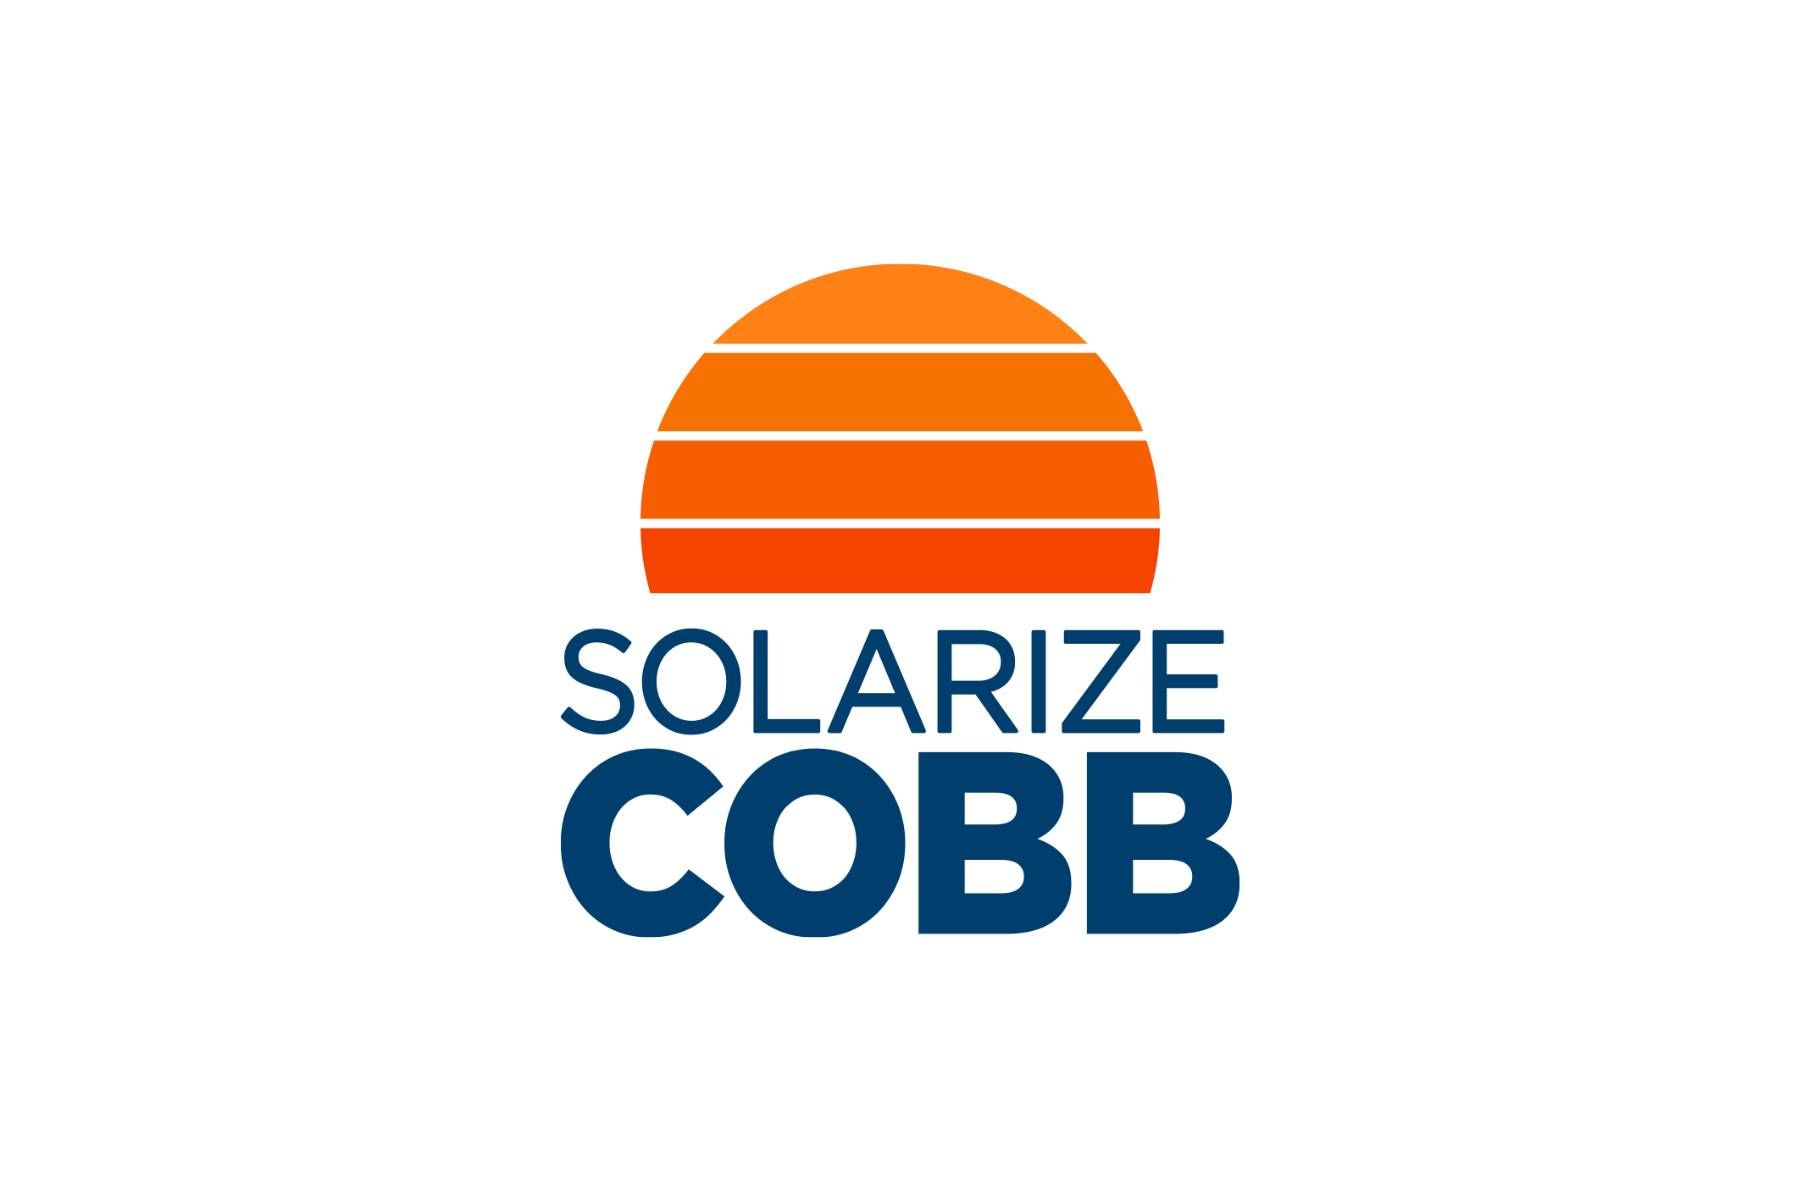 Solarize Cobb Press Release